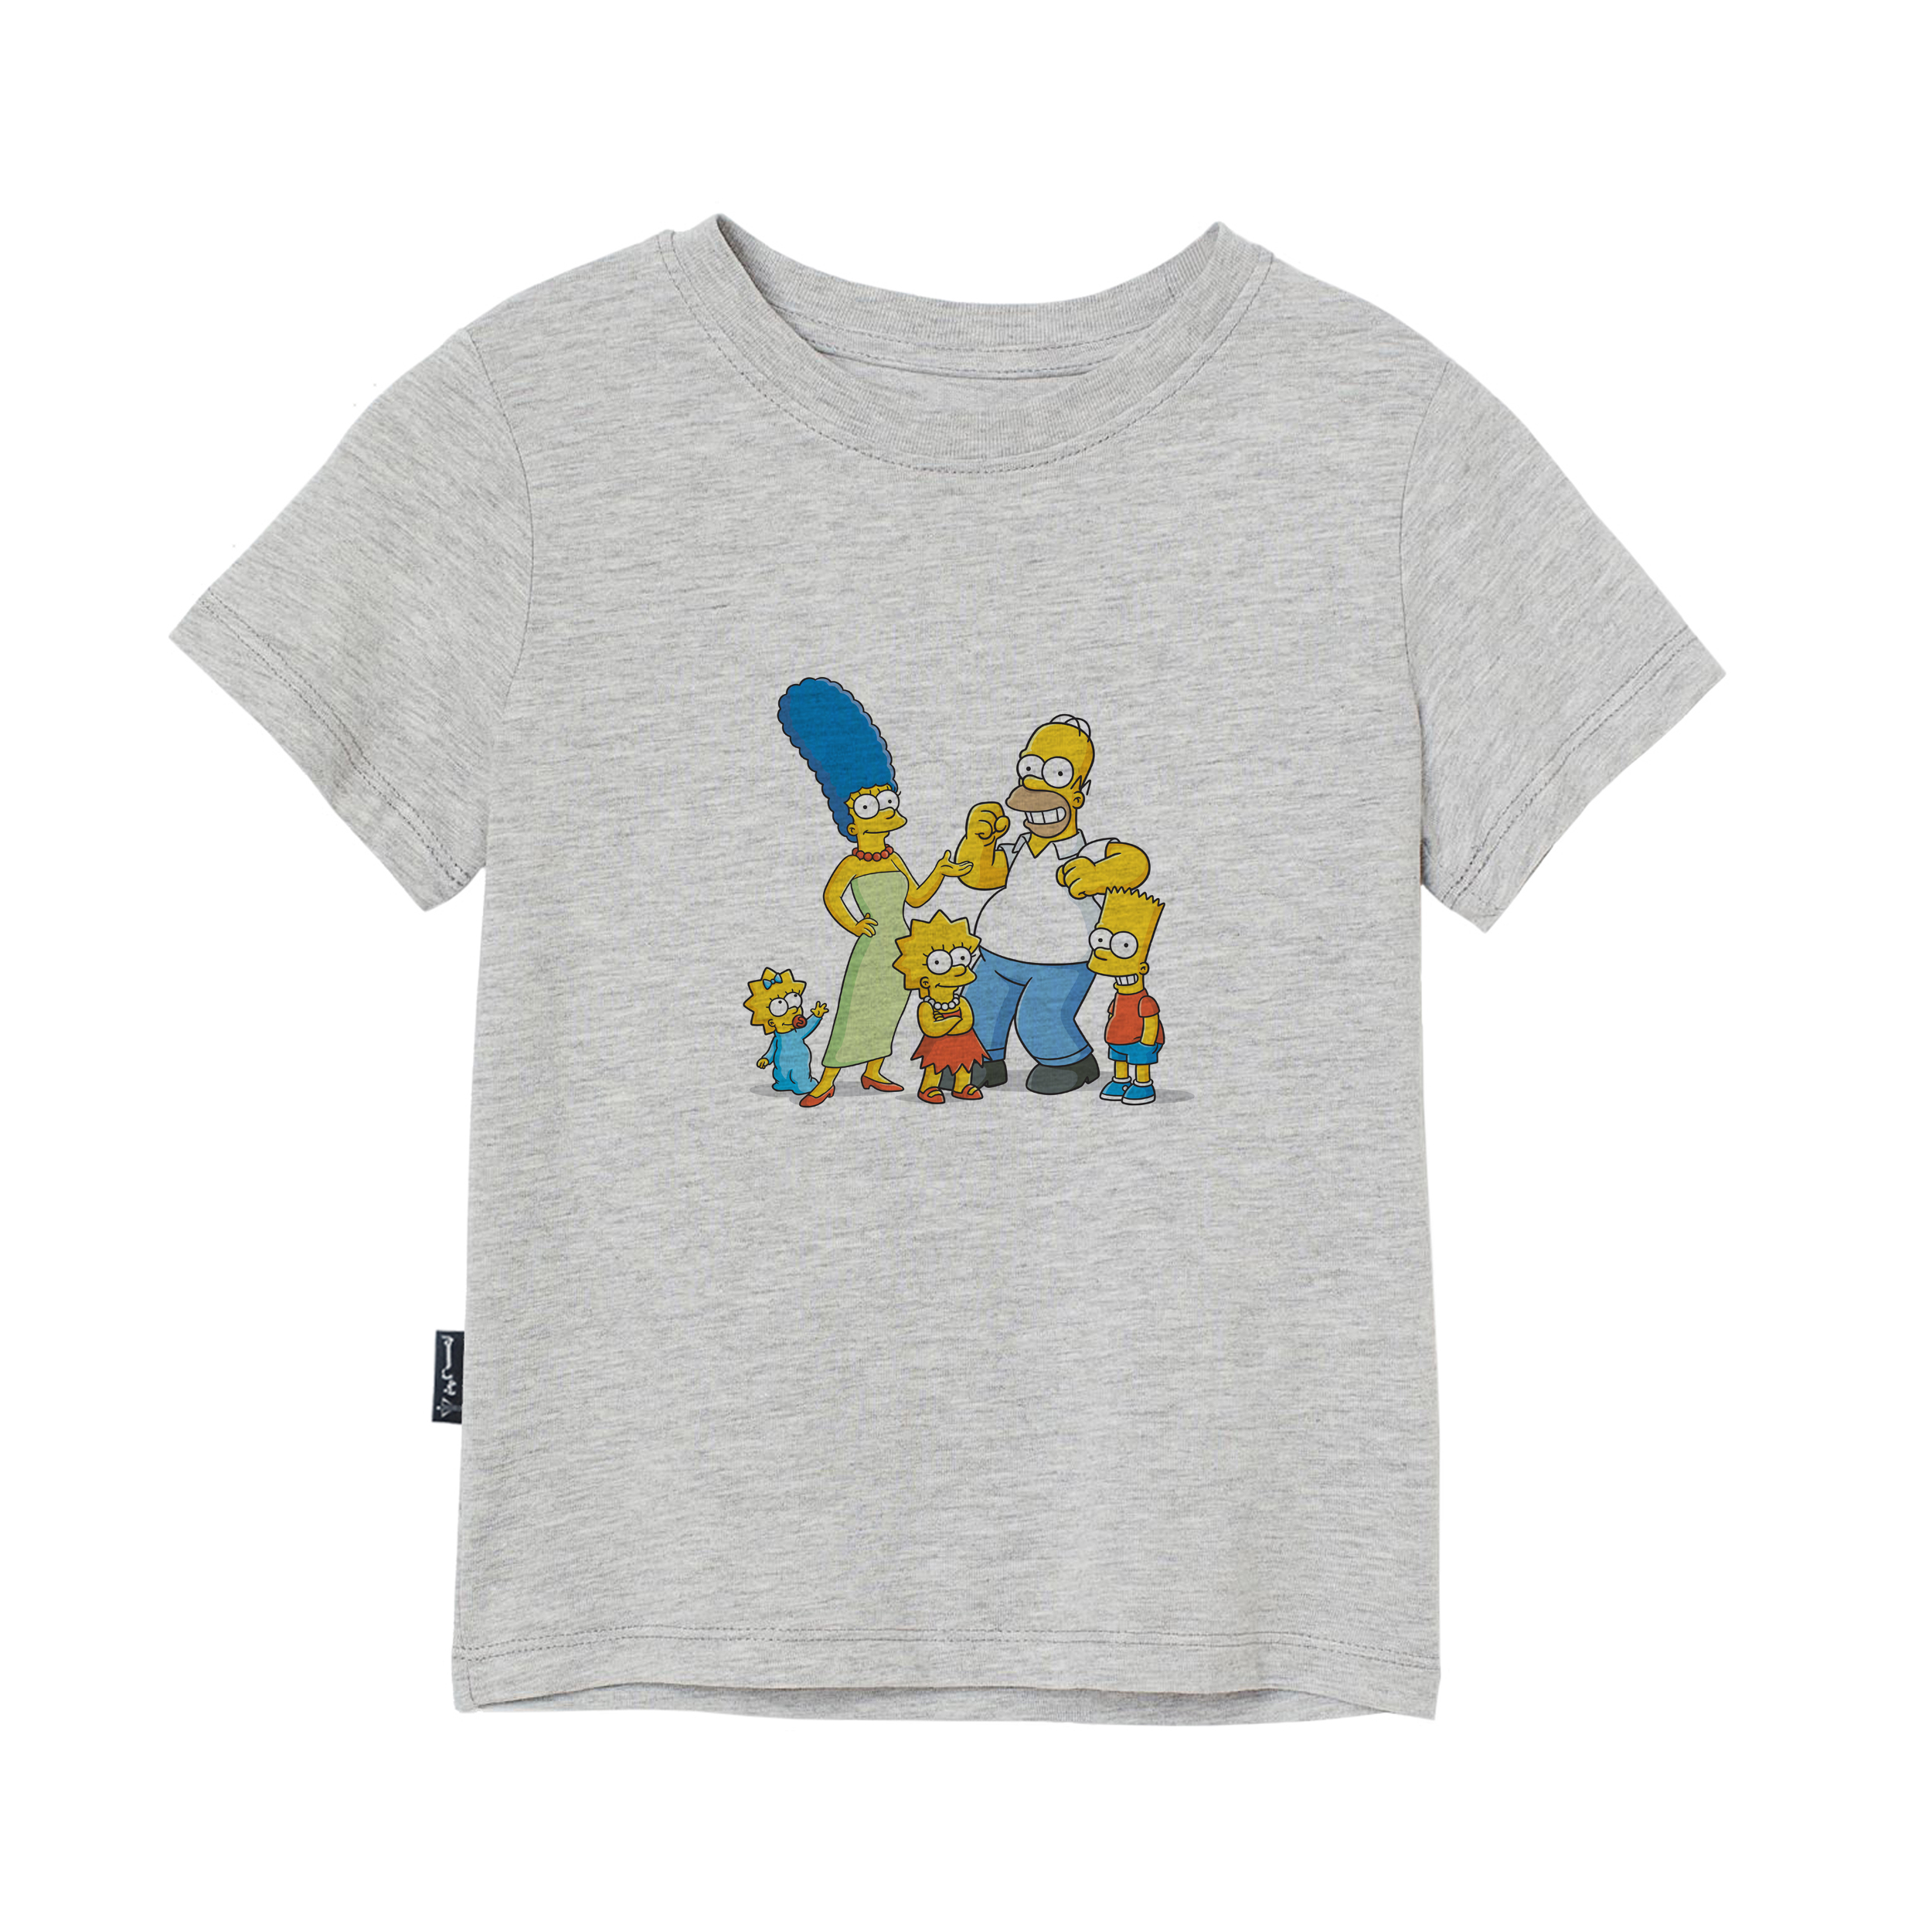 تی شرت آستین کوتاه بچگانه به رسم مدل سیمپسون ها کد 1131